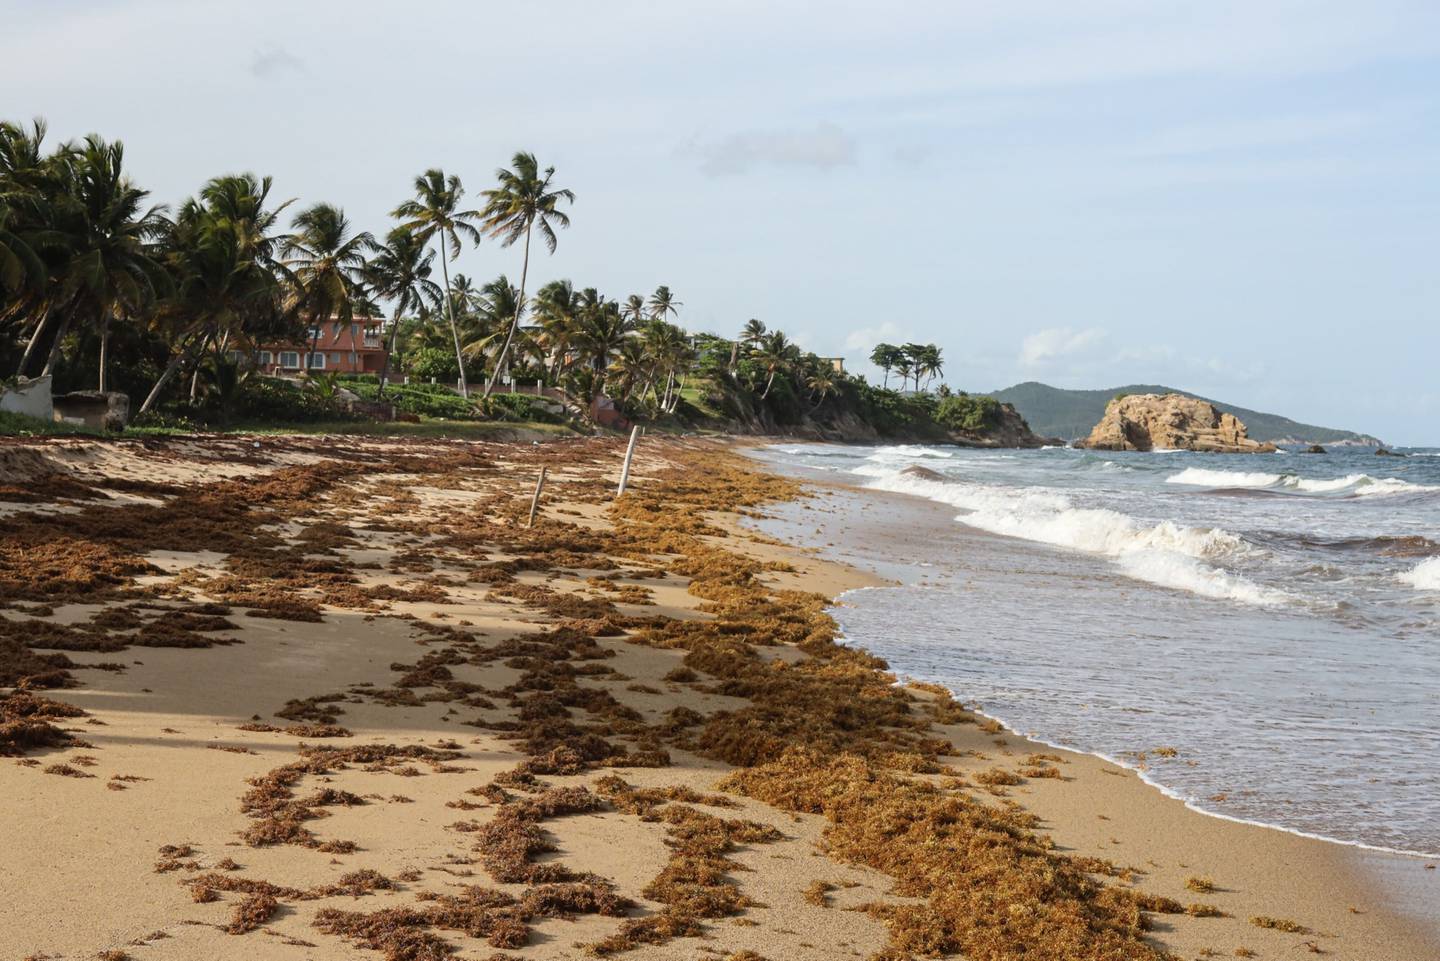 Las algas sargazo se acumulan en una playa de Emajagua, Puerto Rico, el viernes 12 de agosto de 2022. Fotógrafo: Jonathan Alpeyrie/Bloomberg